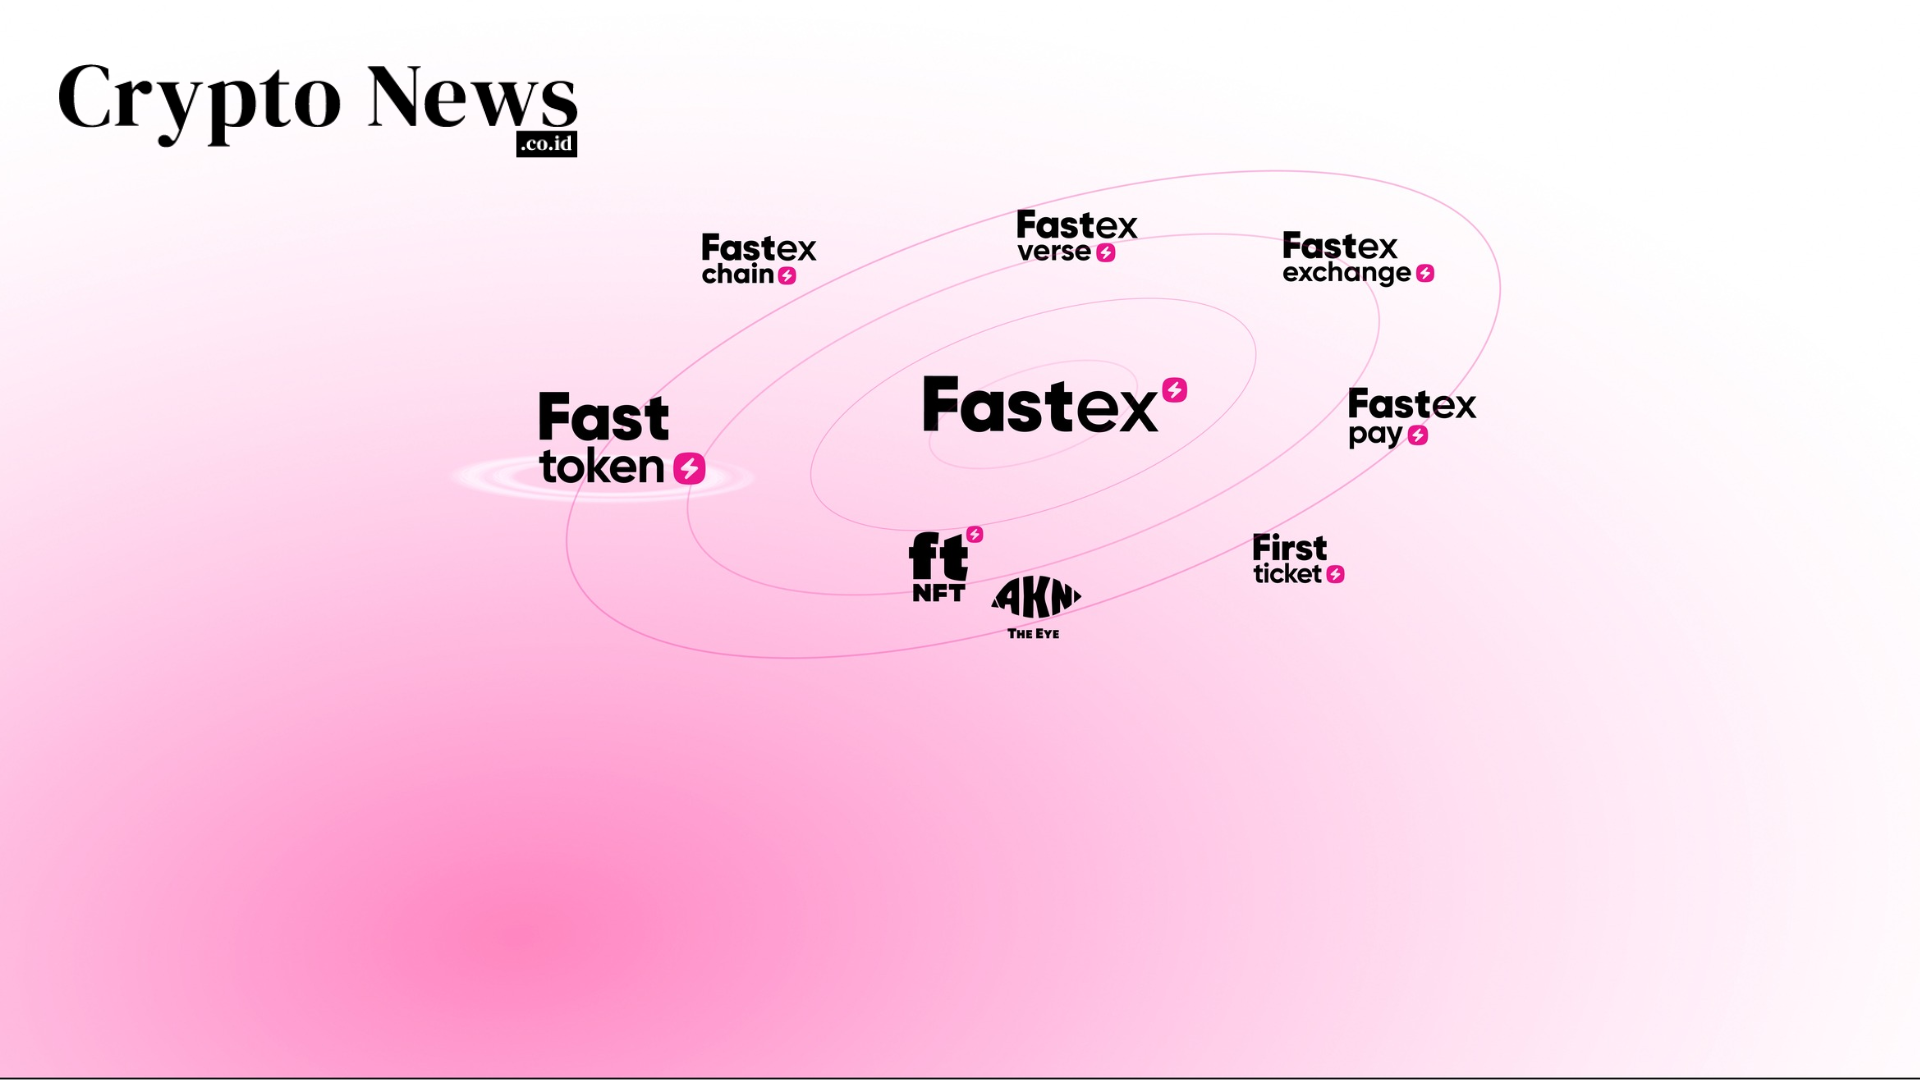 illust - Perusahaan Web3 “Fastex” telah Mengumpulkan $23,2 Juta Melalui Penjualan Fasttoken (FTN)